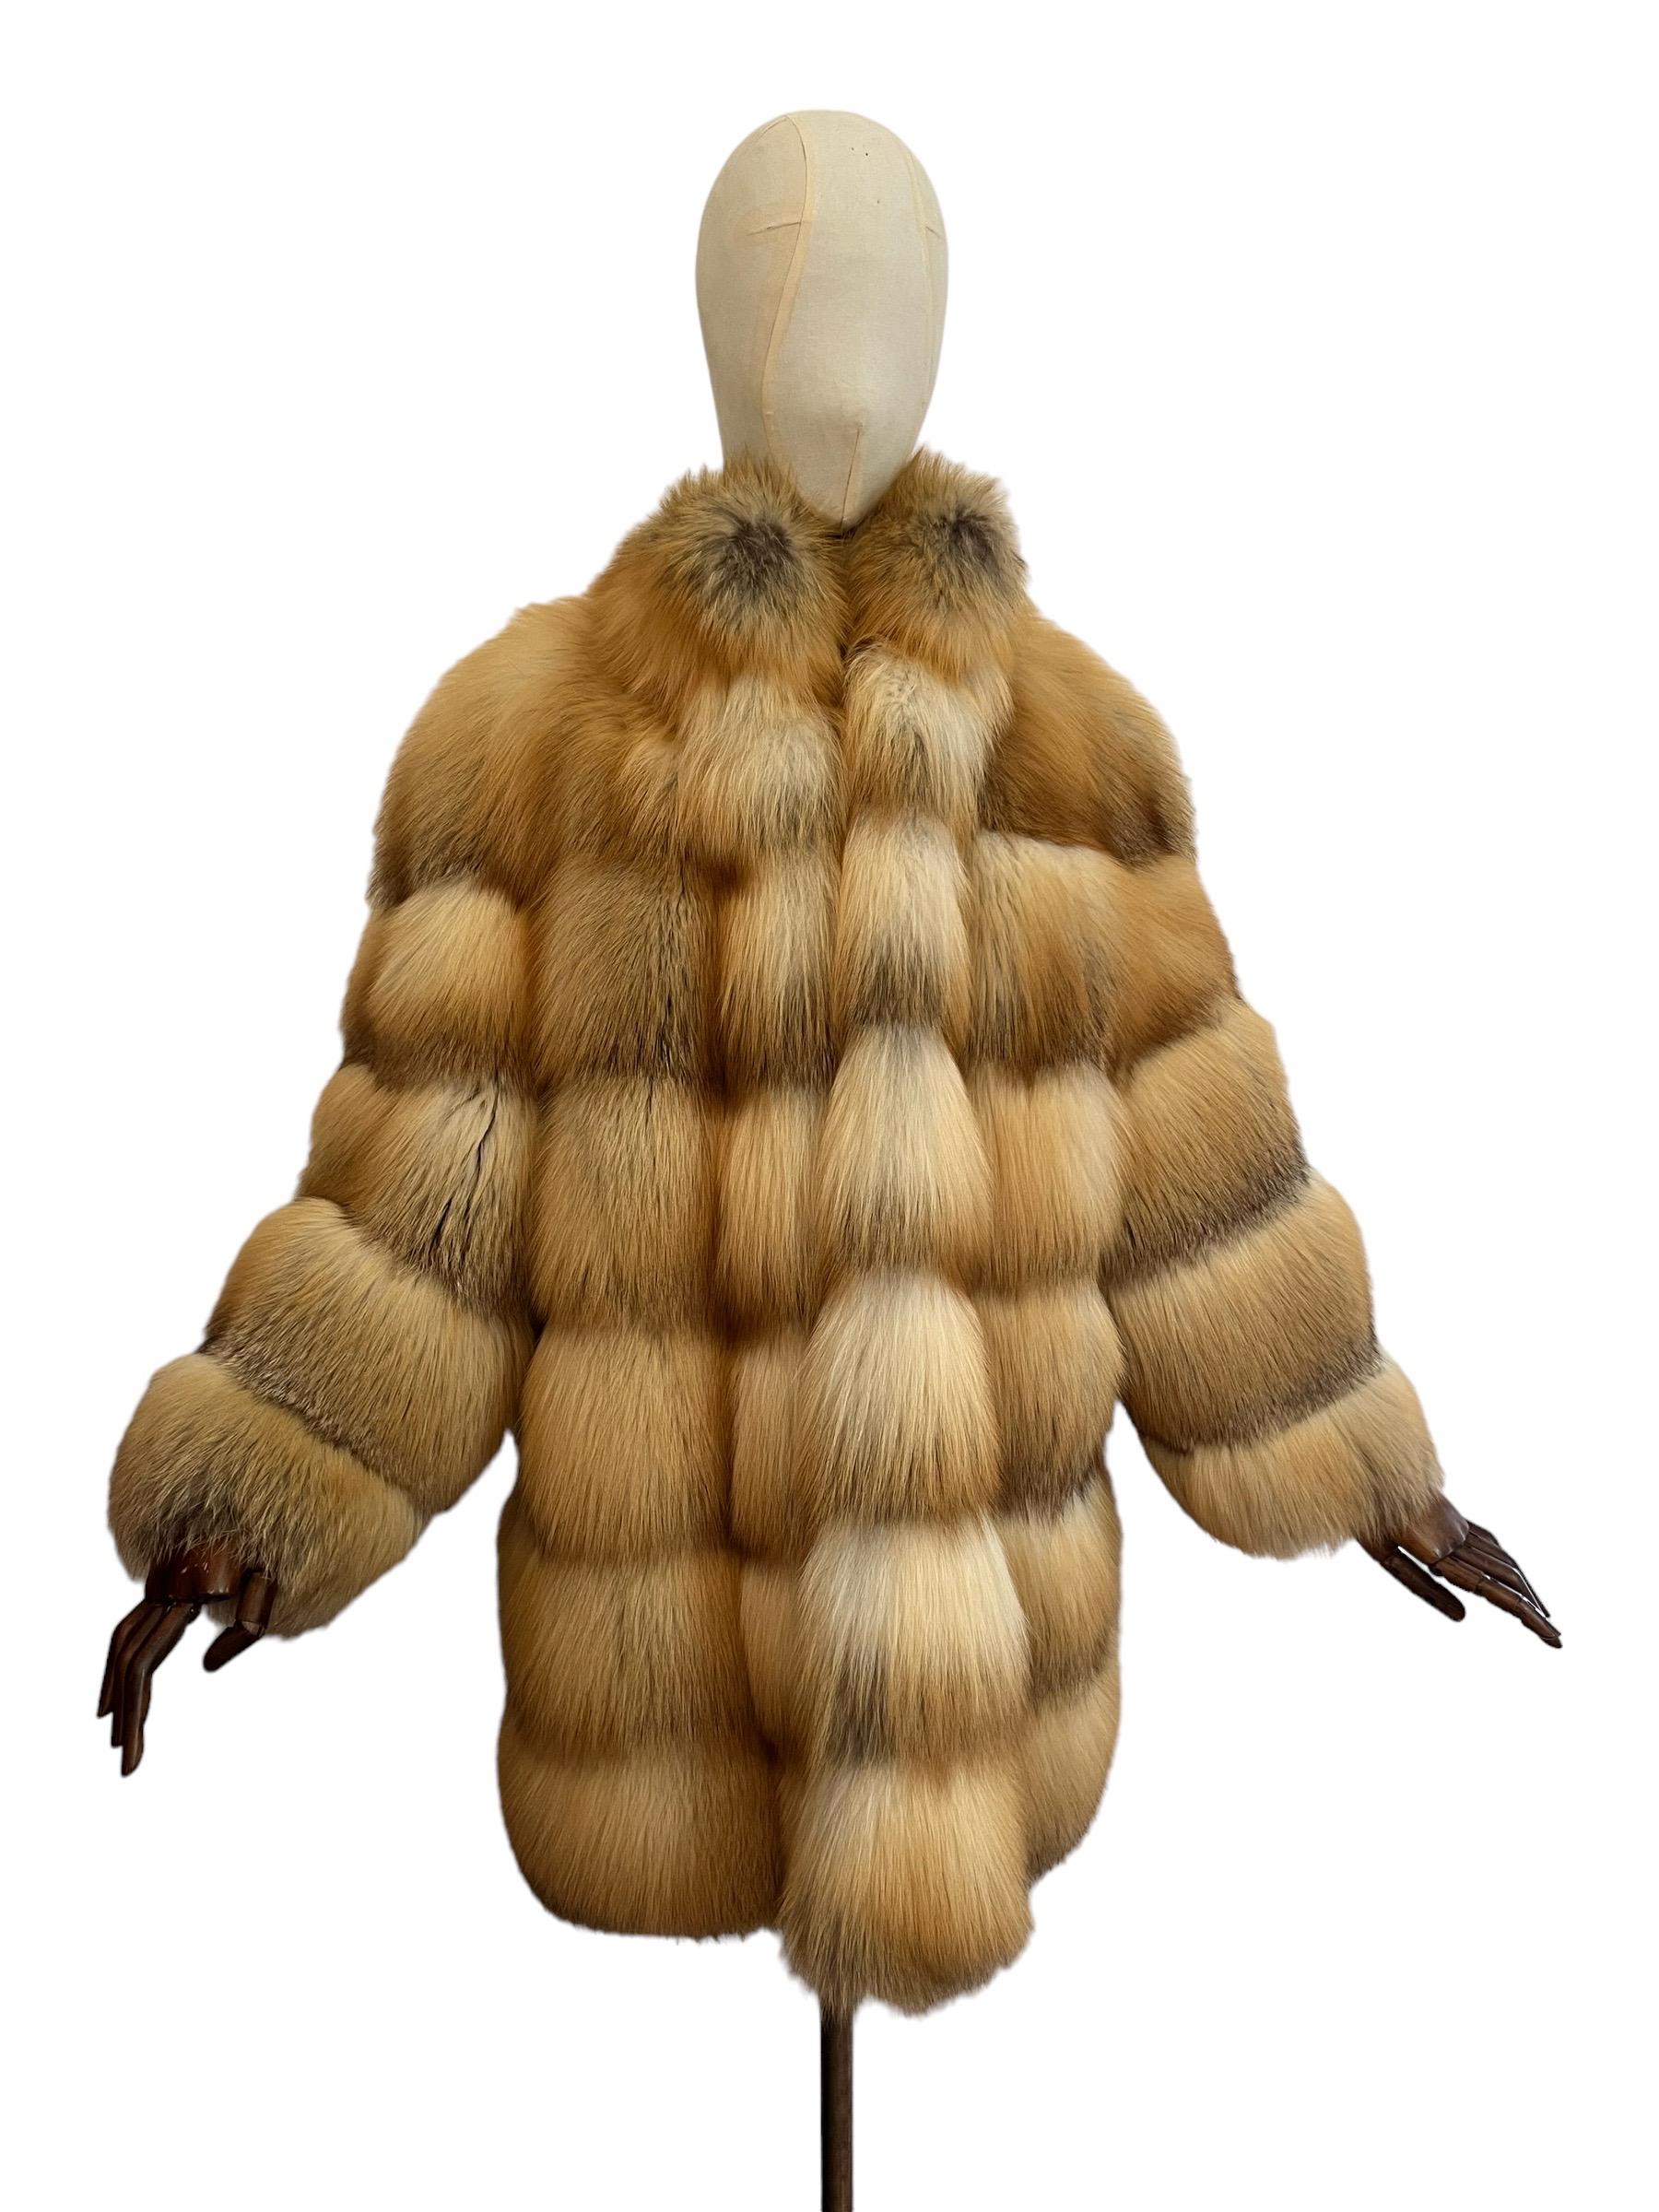 Unglaublicher, opulenter Vintage ESCADA by Margaretha Ley Pelzmantel circa 2000.

Diese außergewöhnliche Vintage Pelz Jacke verfügt über extrem Plüsch, dicke Pelze von weichen natürlichen goldenen Insel Fuchs (Vulpes Domestica), Samt gefütterte